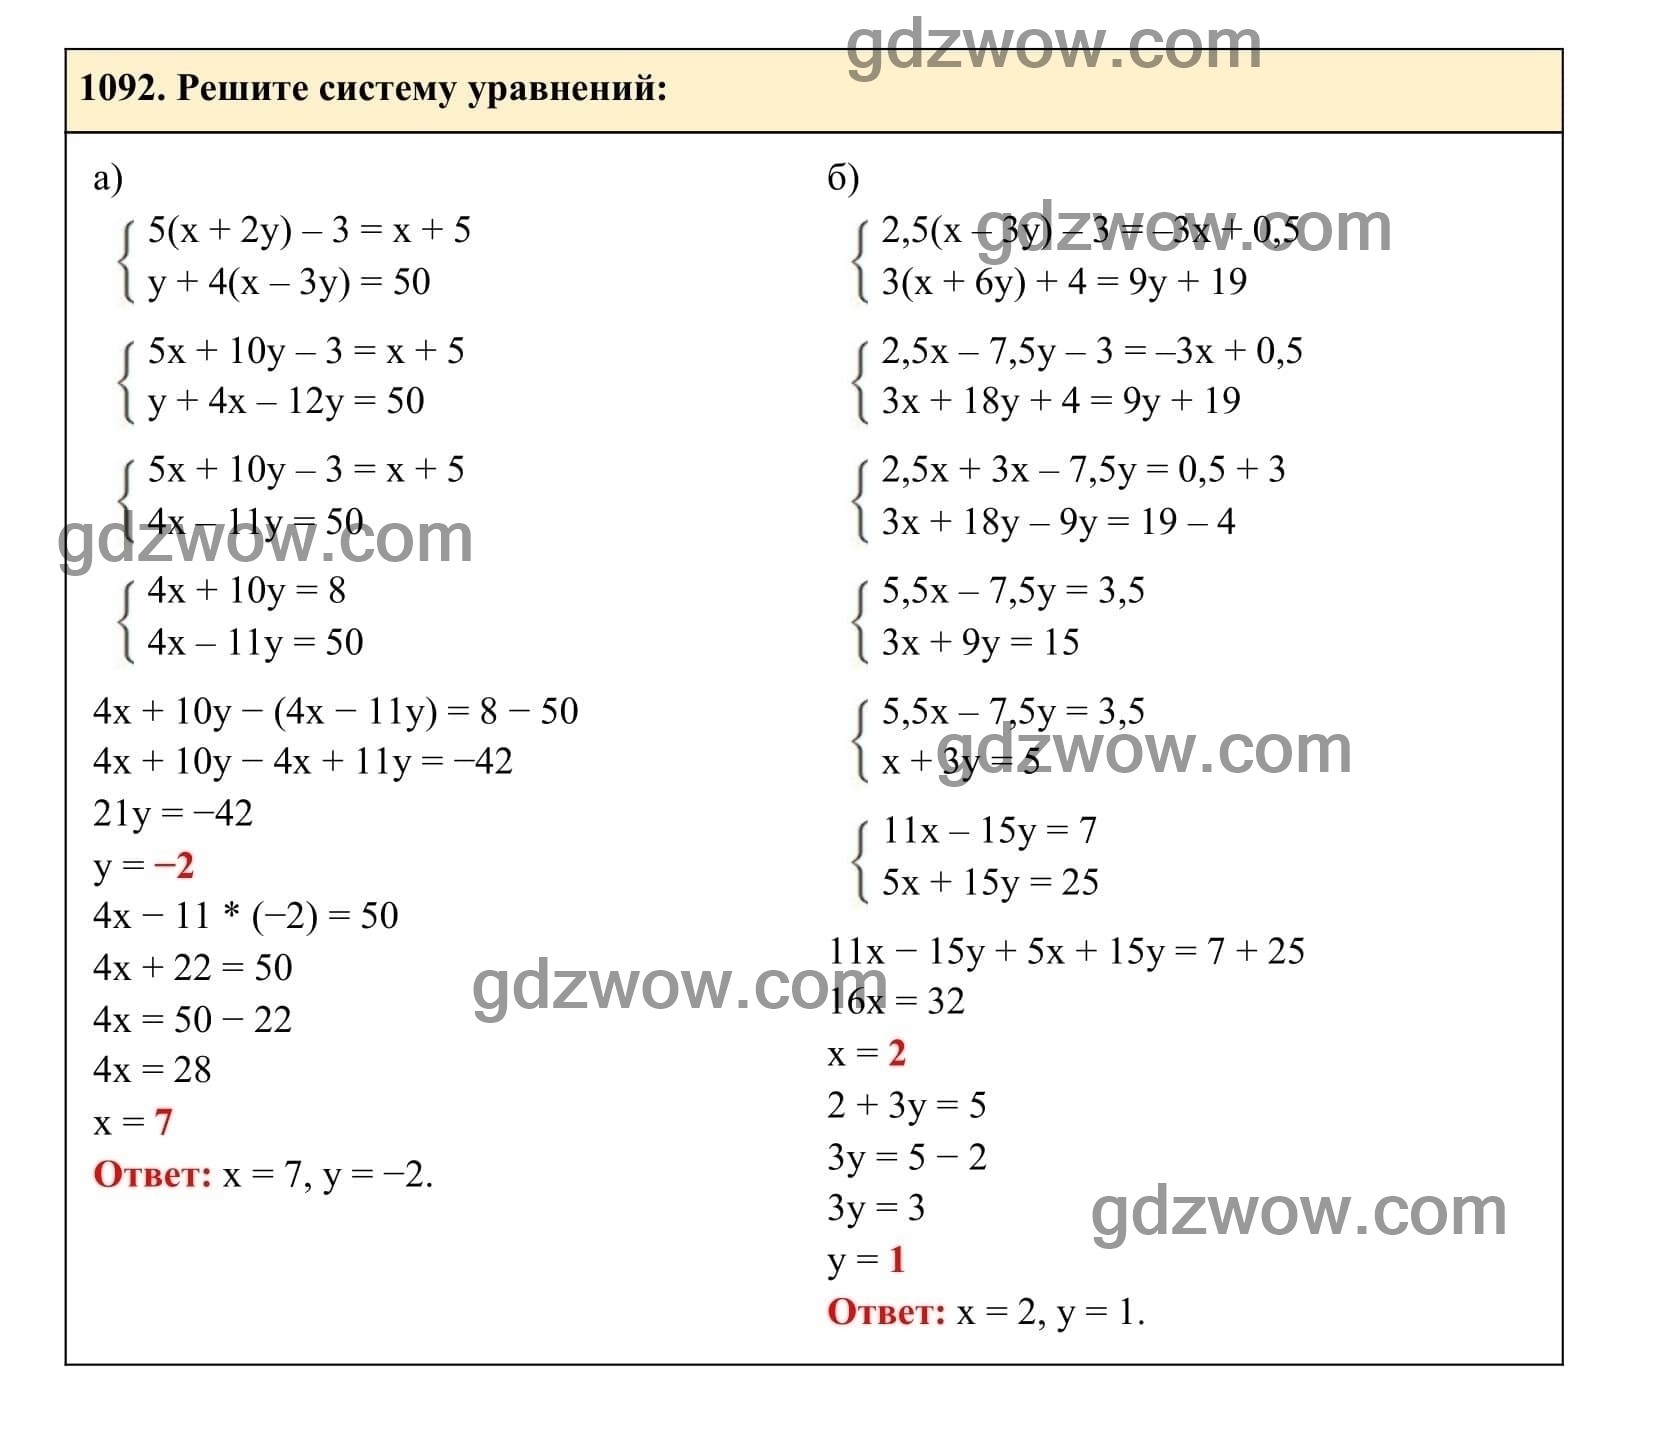 Упражнение 1092 - ГДЗ по Алгебре 7 класс Учебник Макарычев (решебник) - GDZwow